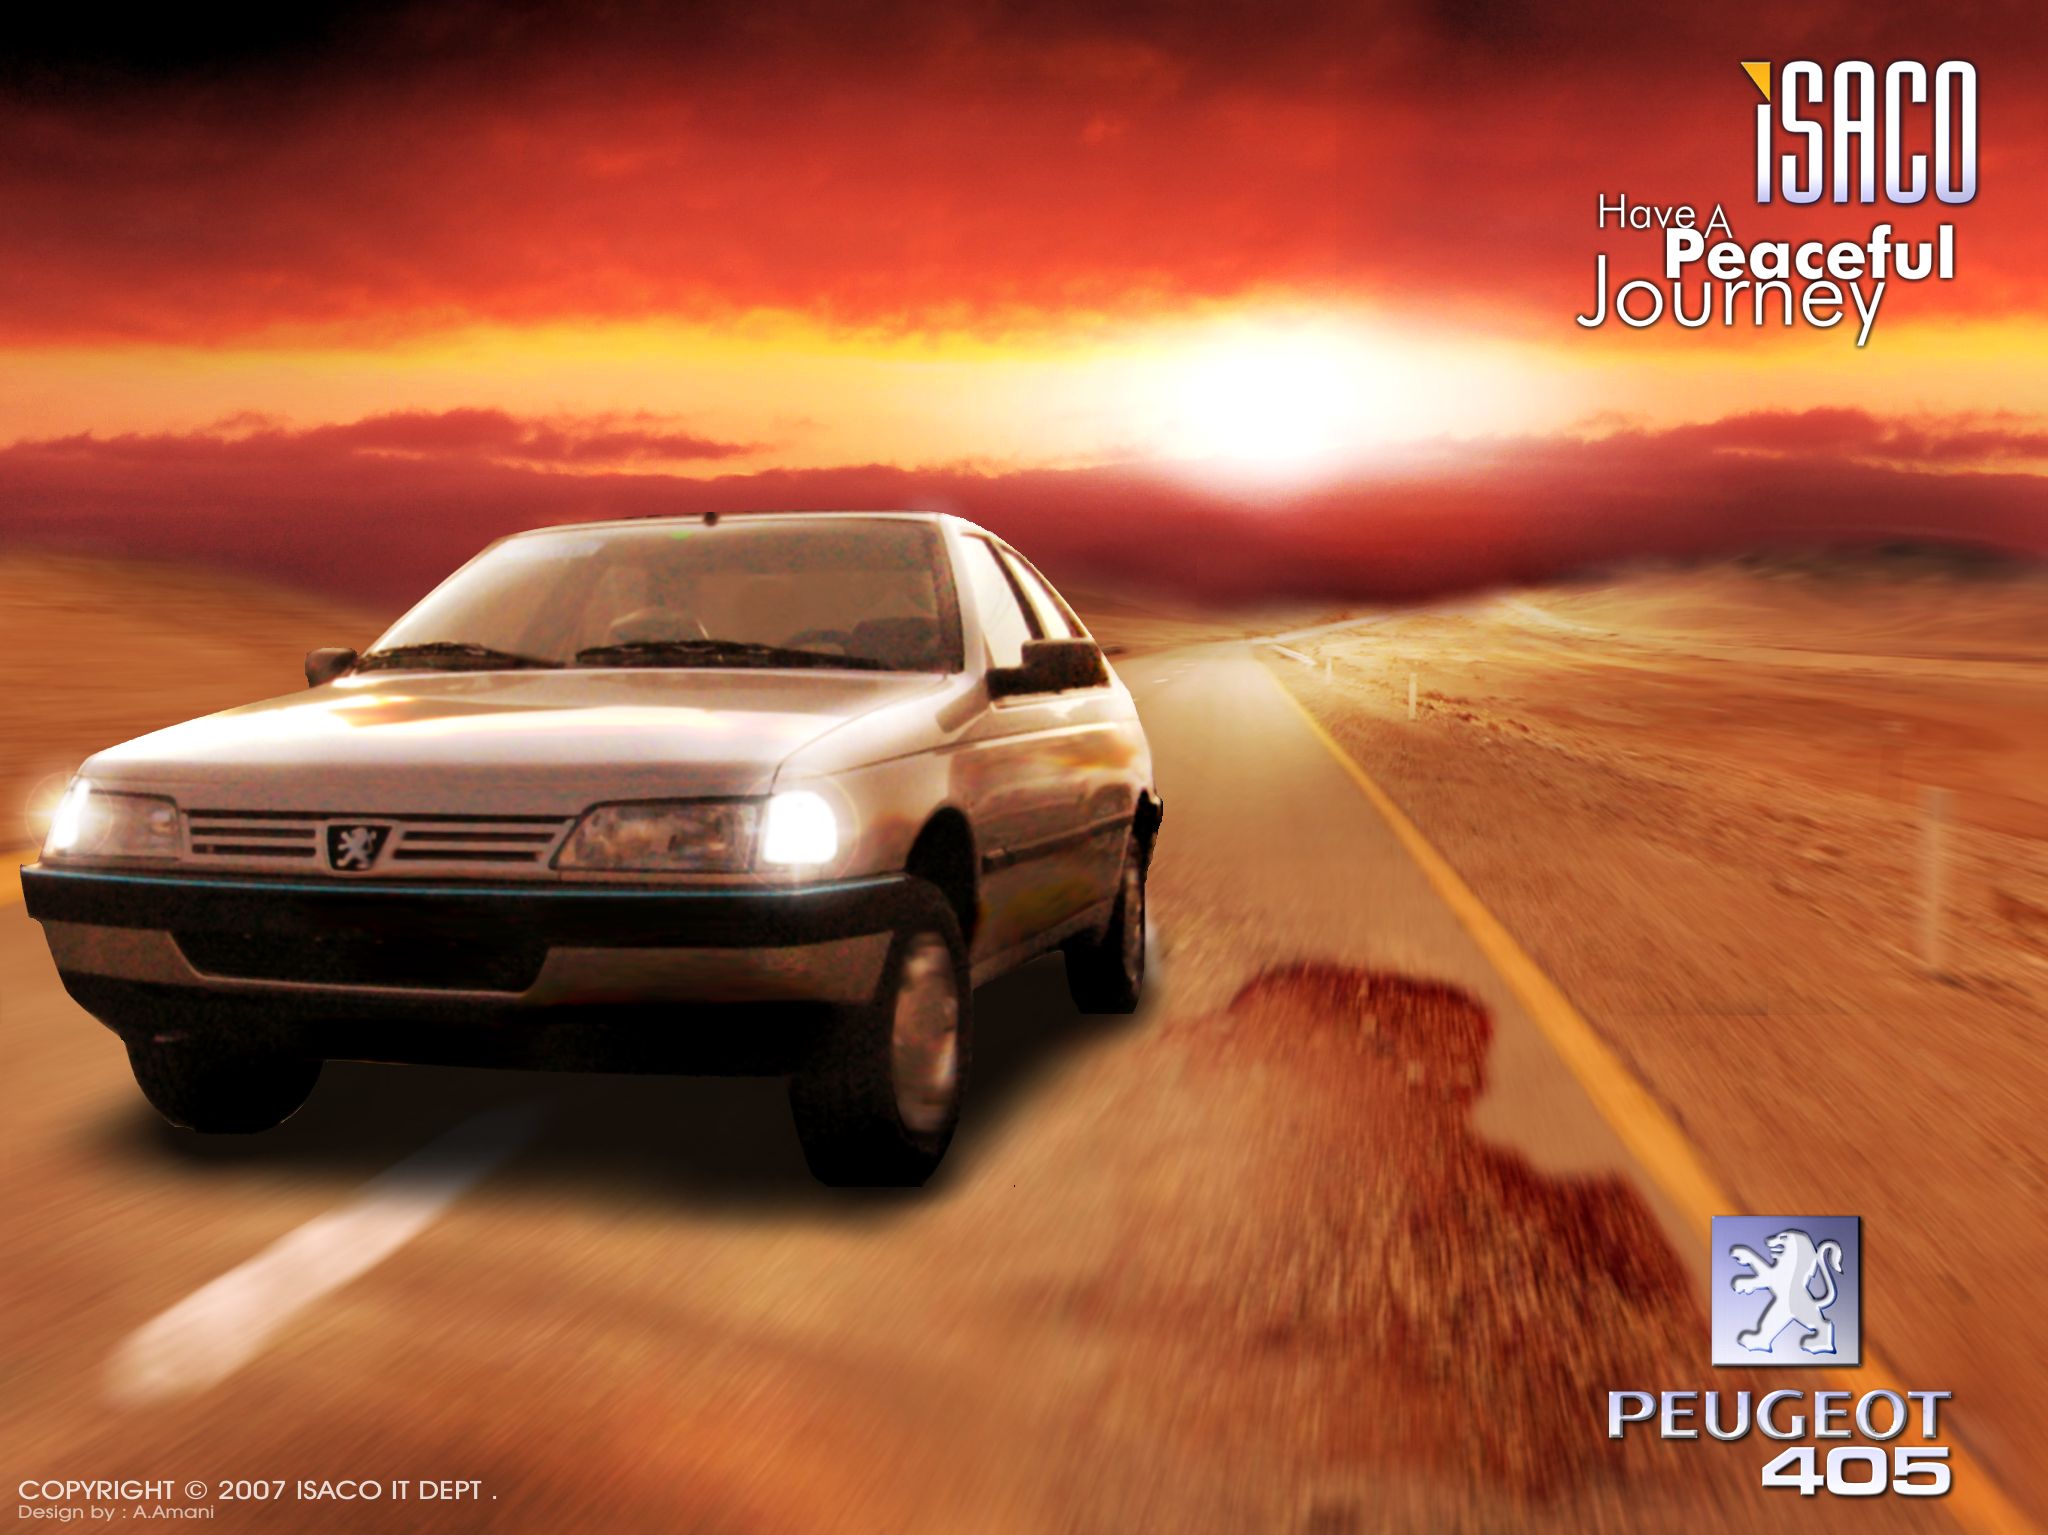 Title: Peugeot 405 Wallpaper Client: ISACO Year: 2003. Graphic design portfolio, Graphic design, Logo design